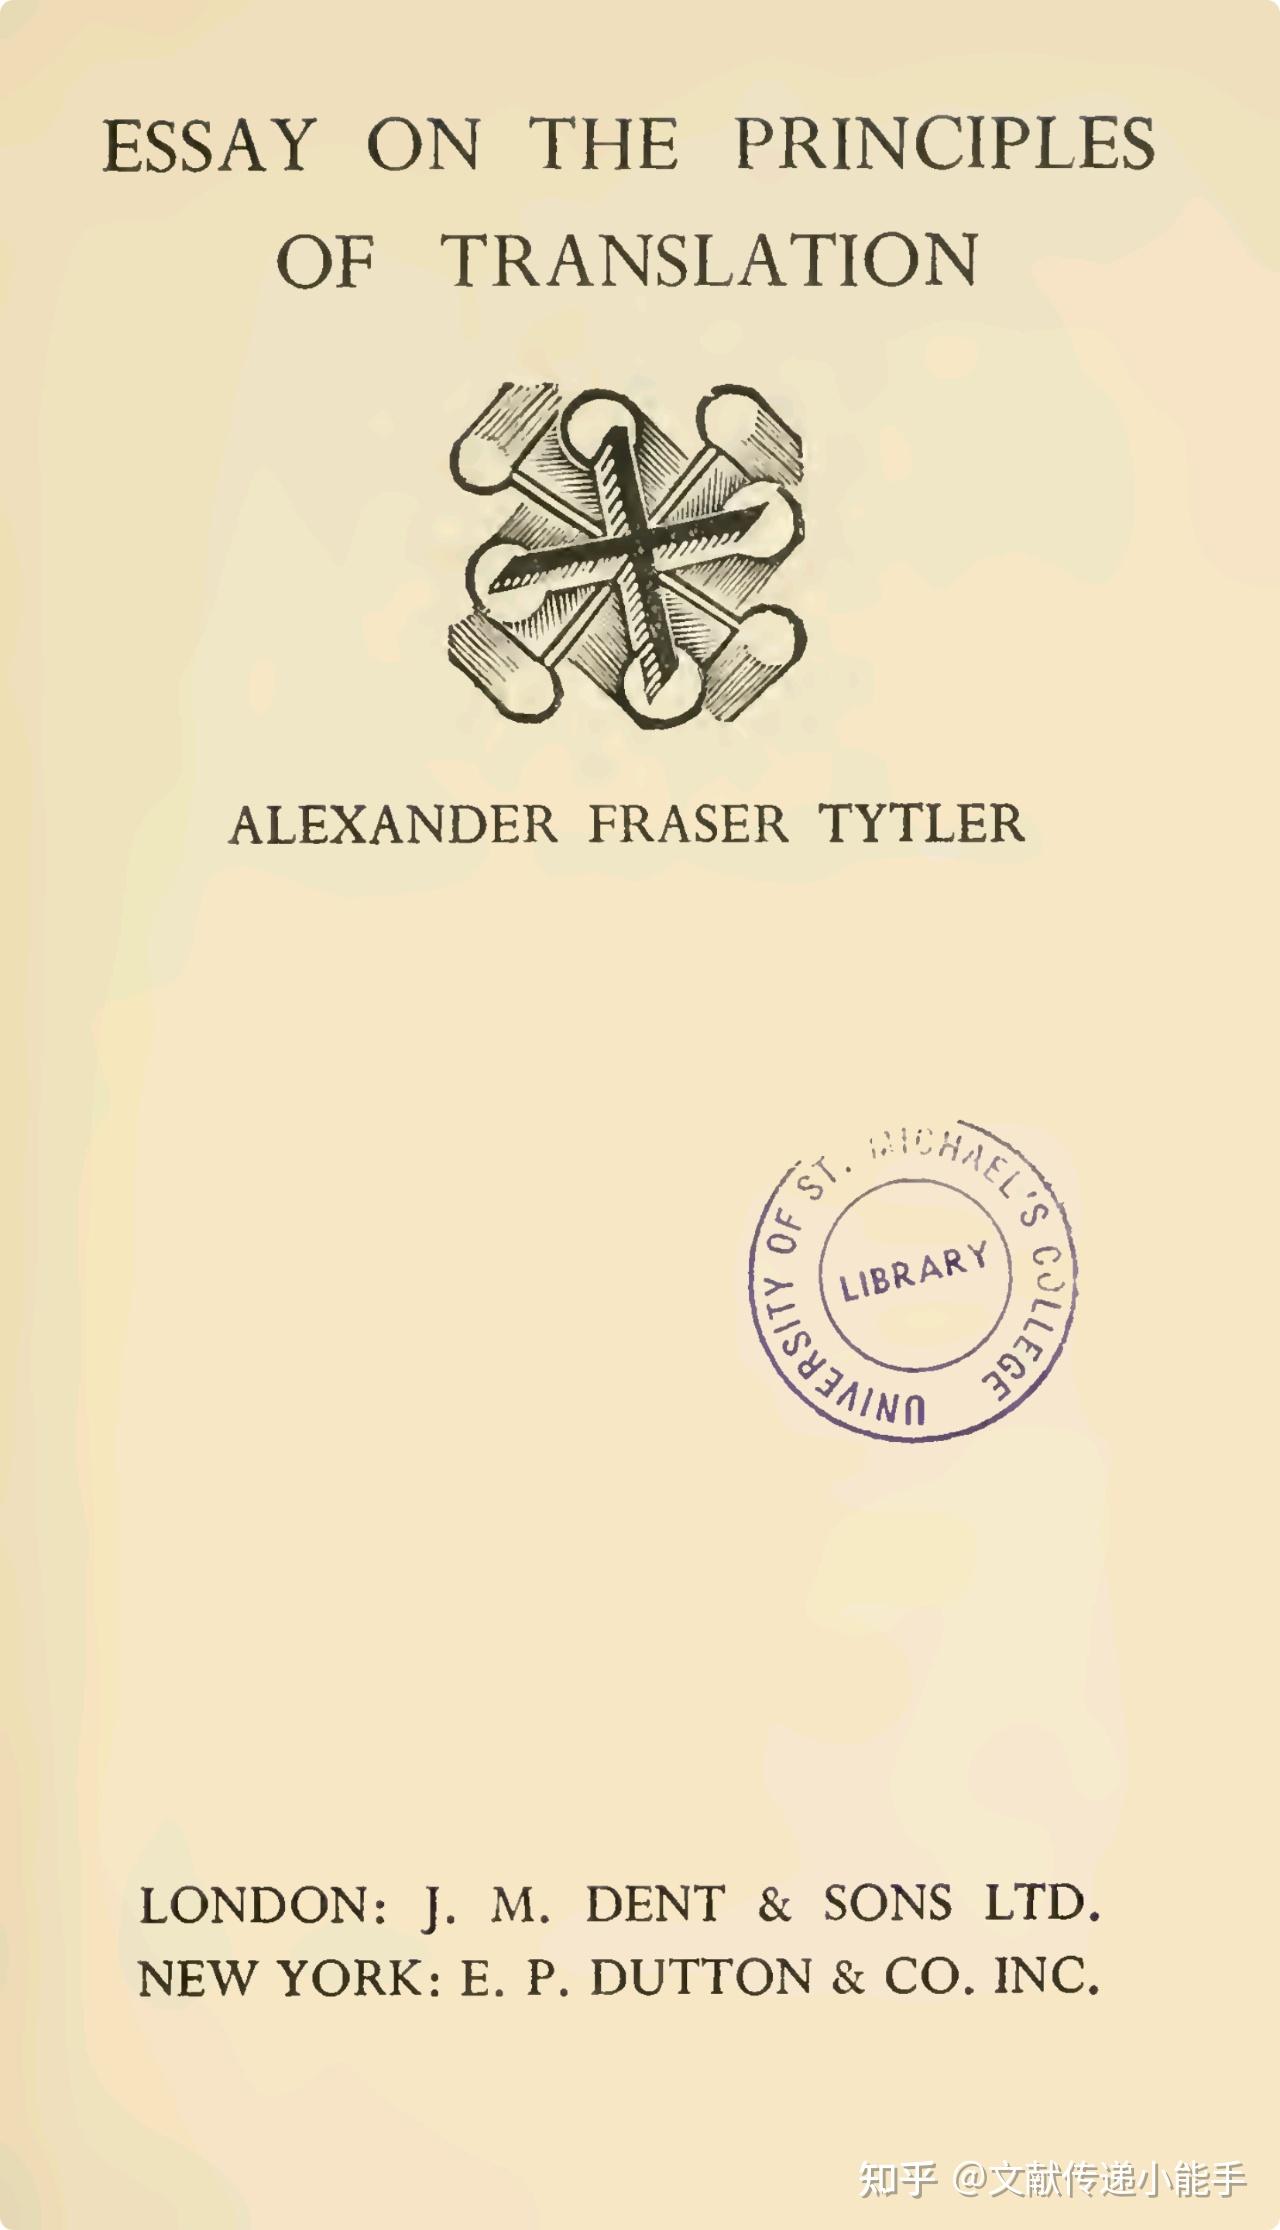 alexander fraser tytler essay on the principles of translation